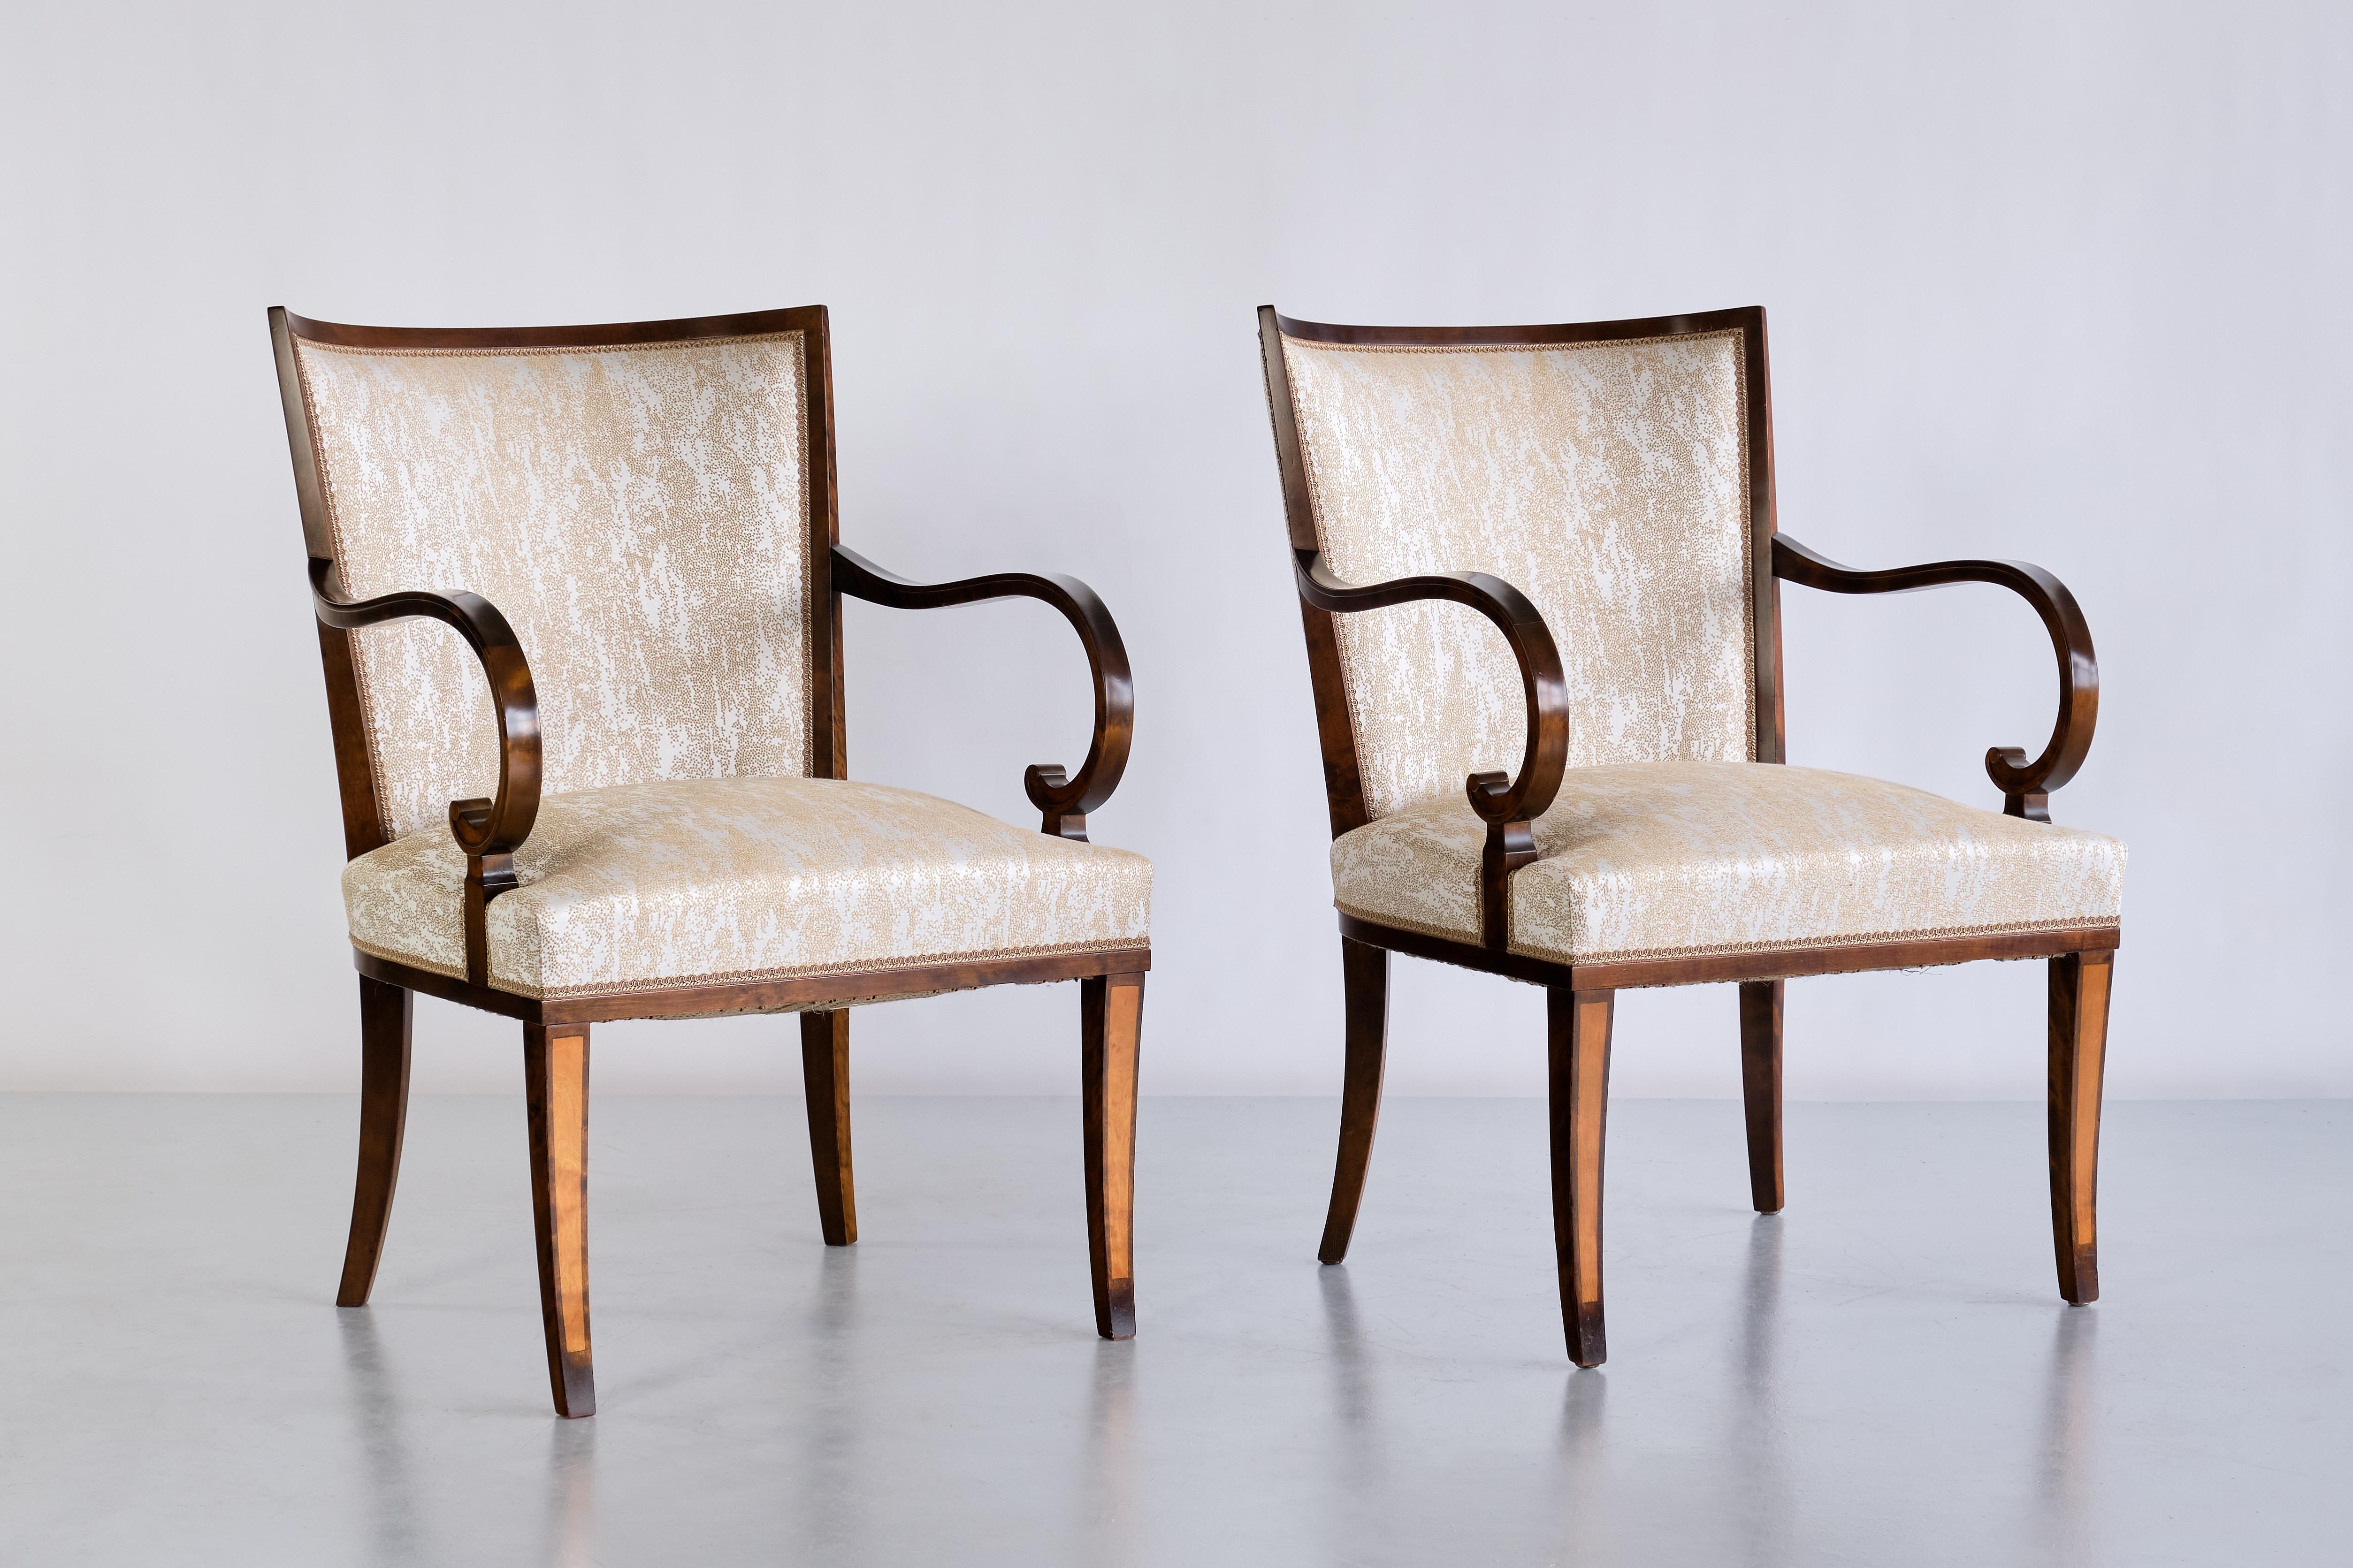 Cette paire de fauteuils exceptionnellement rare a été conçue par Carl Malmsten et produite par Svenska Möbelfabriken à Bodafors, en Suède, au début des années 1930. Le design raffiné est marqué par son cadre avec un dossier joliment incurvé et des